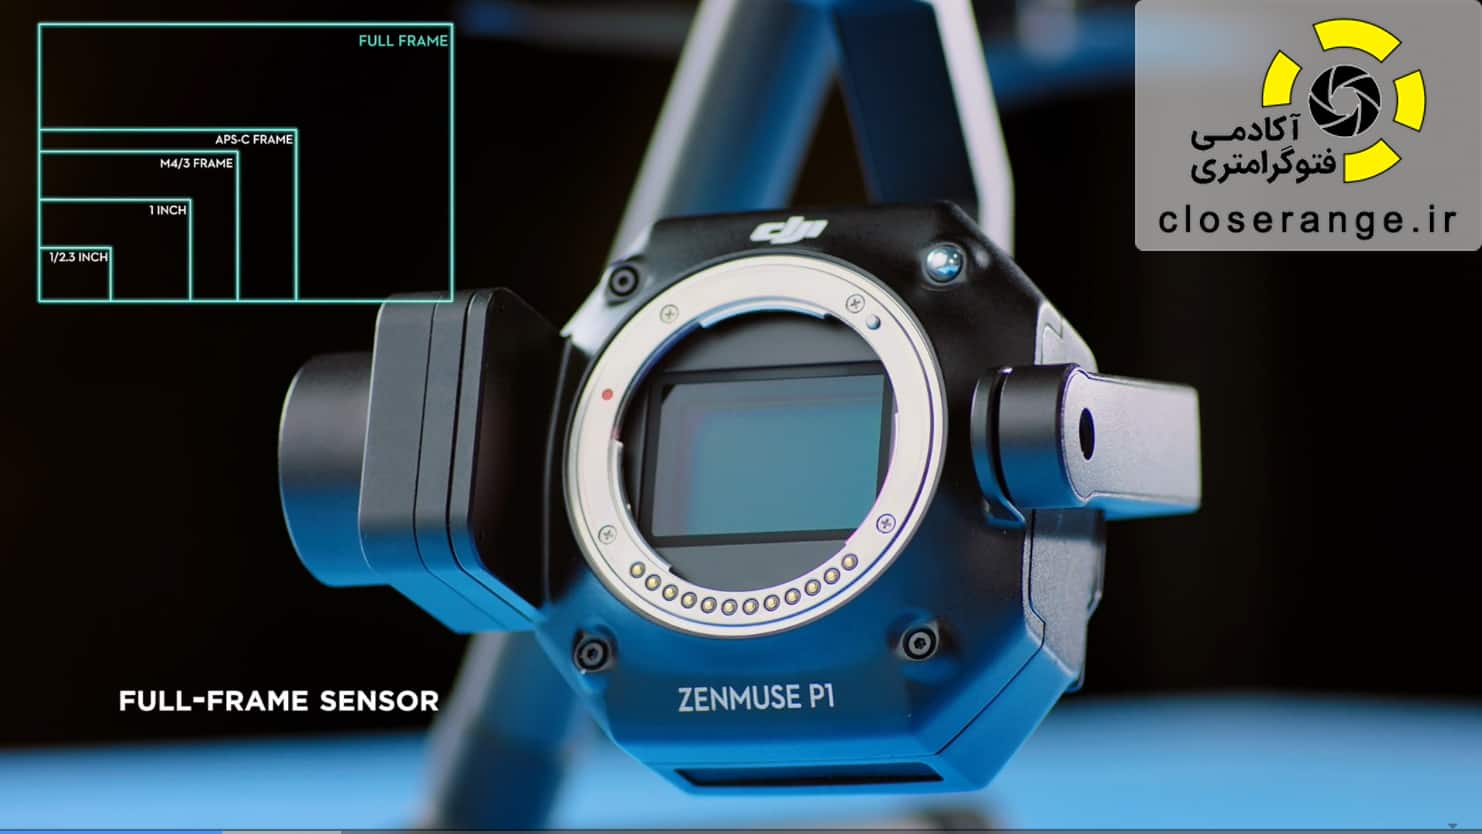 Zenmuse P1 Full Frame Sensor